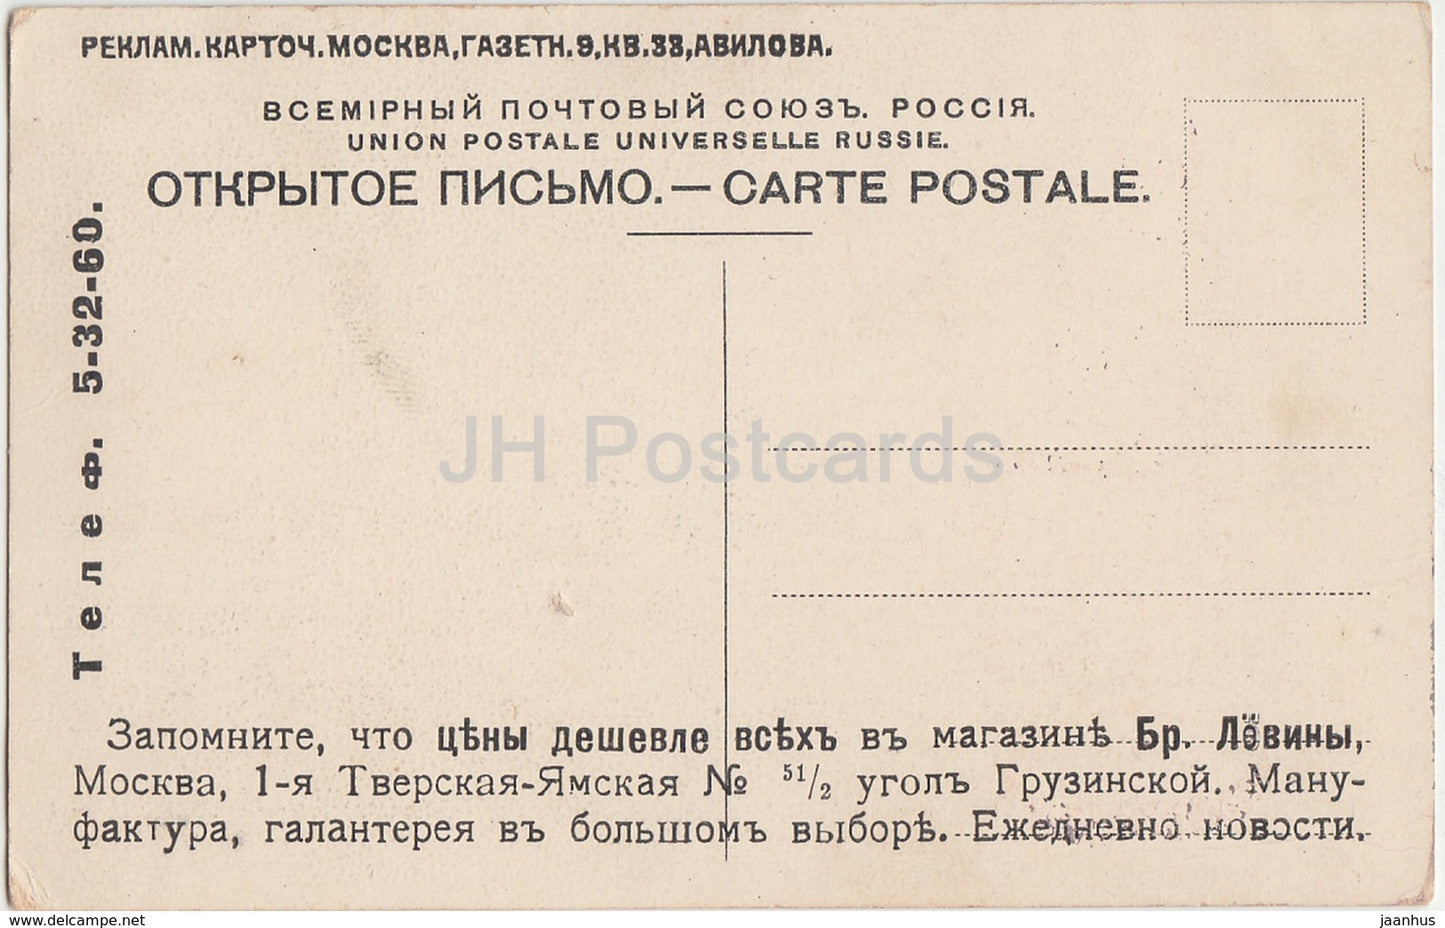 Paroles de chansons ukrainiennes anciennes - carte postale ancienne - Ukraine - Russie impériale - inutilisée